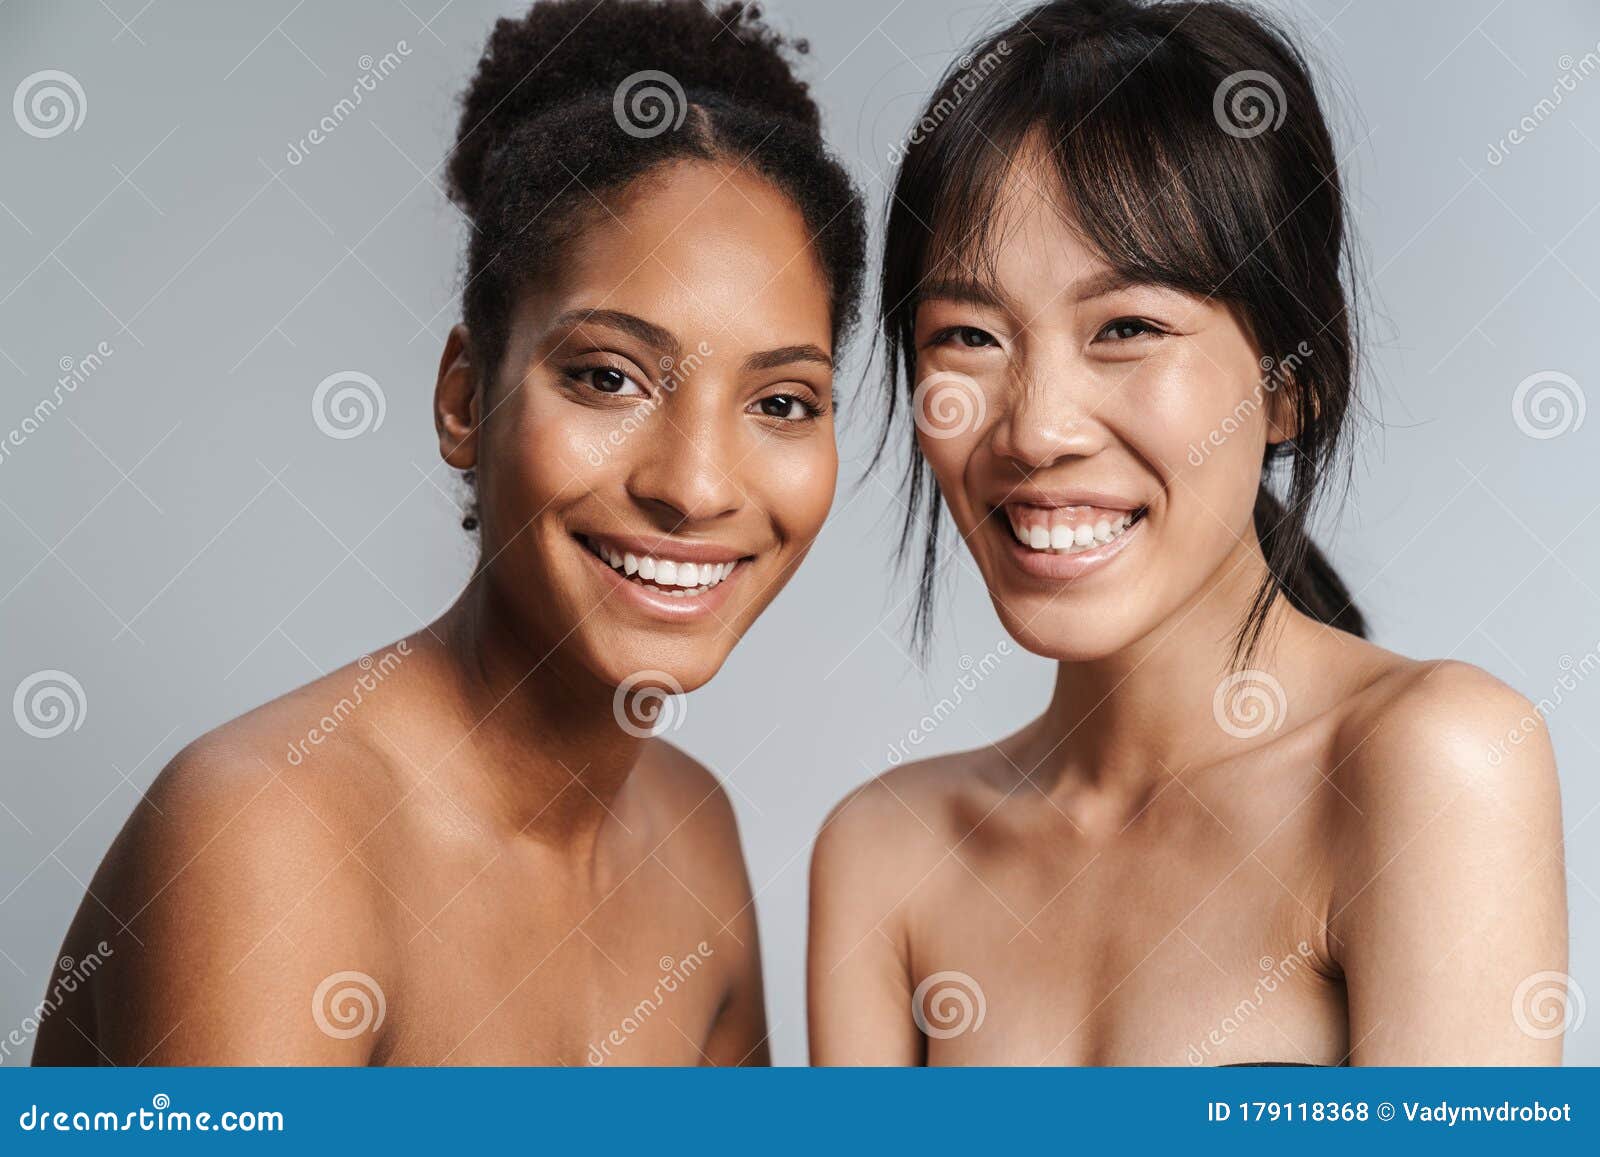 Naked Women Girls